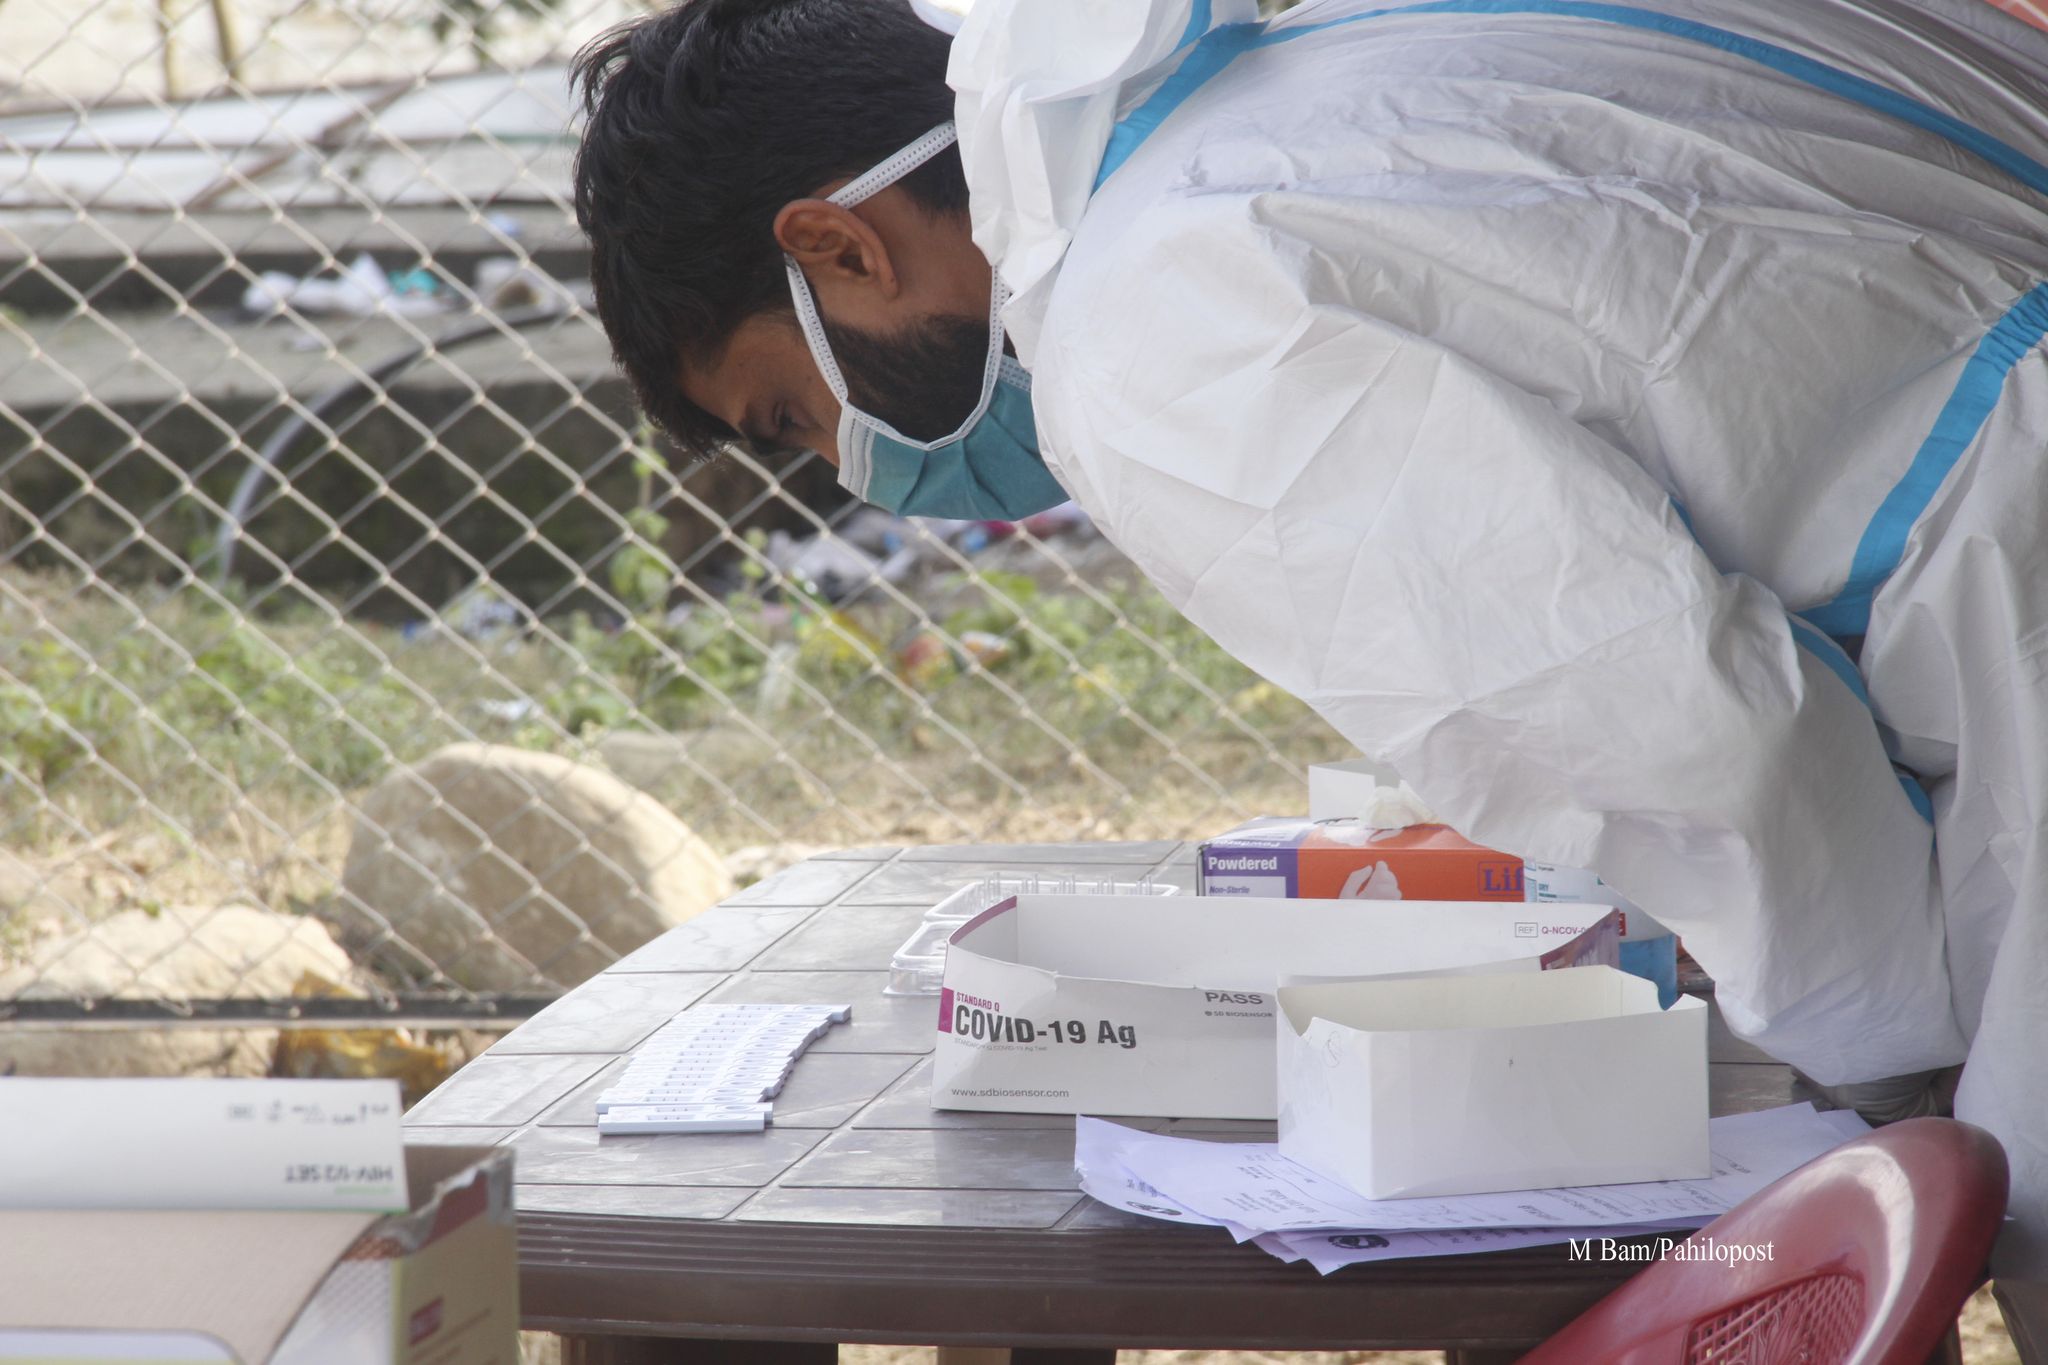 सुदूरपश्चिम प्रदेशमा भारतबाट आएका एक कोरोना संक्रमितको मृत्यु, थपिए १ सय ८४ संक्रमित